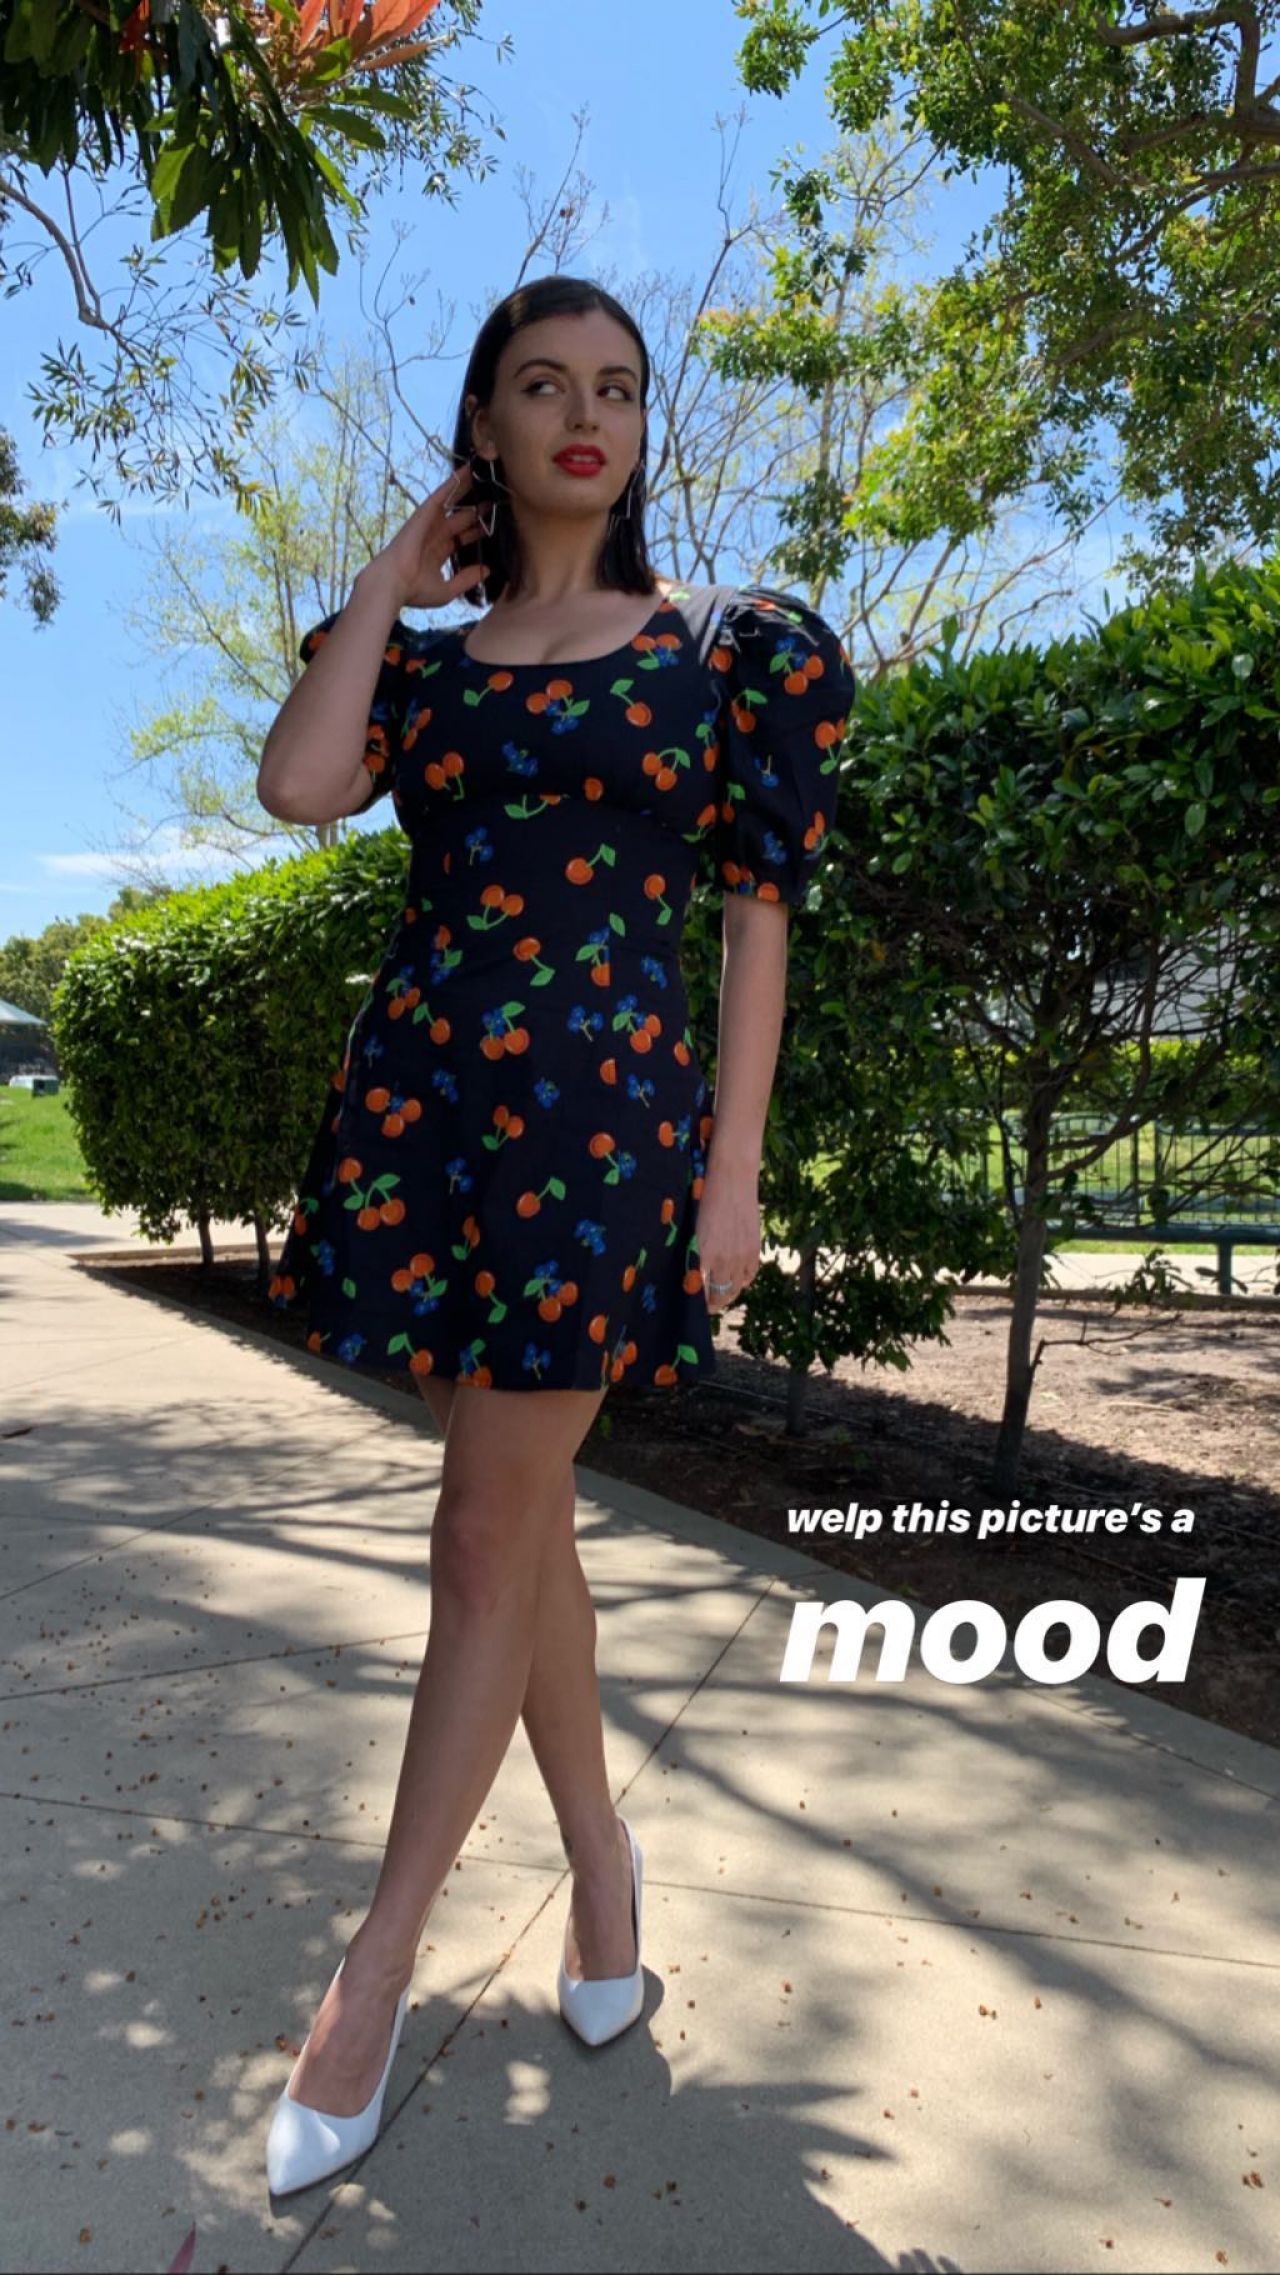 Rebecca Black - Personal Pics 04/27/20191280 x 2275